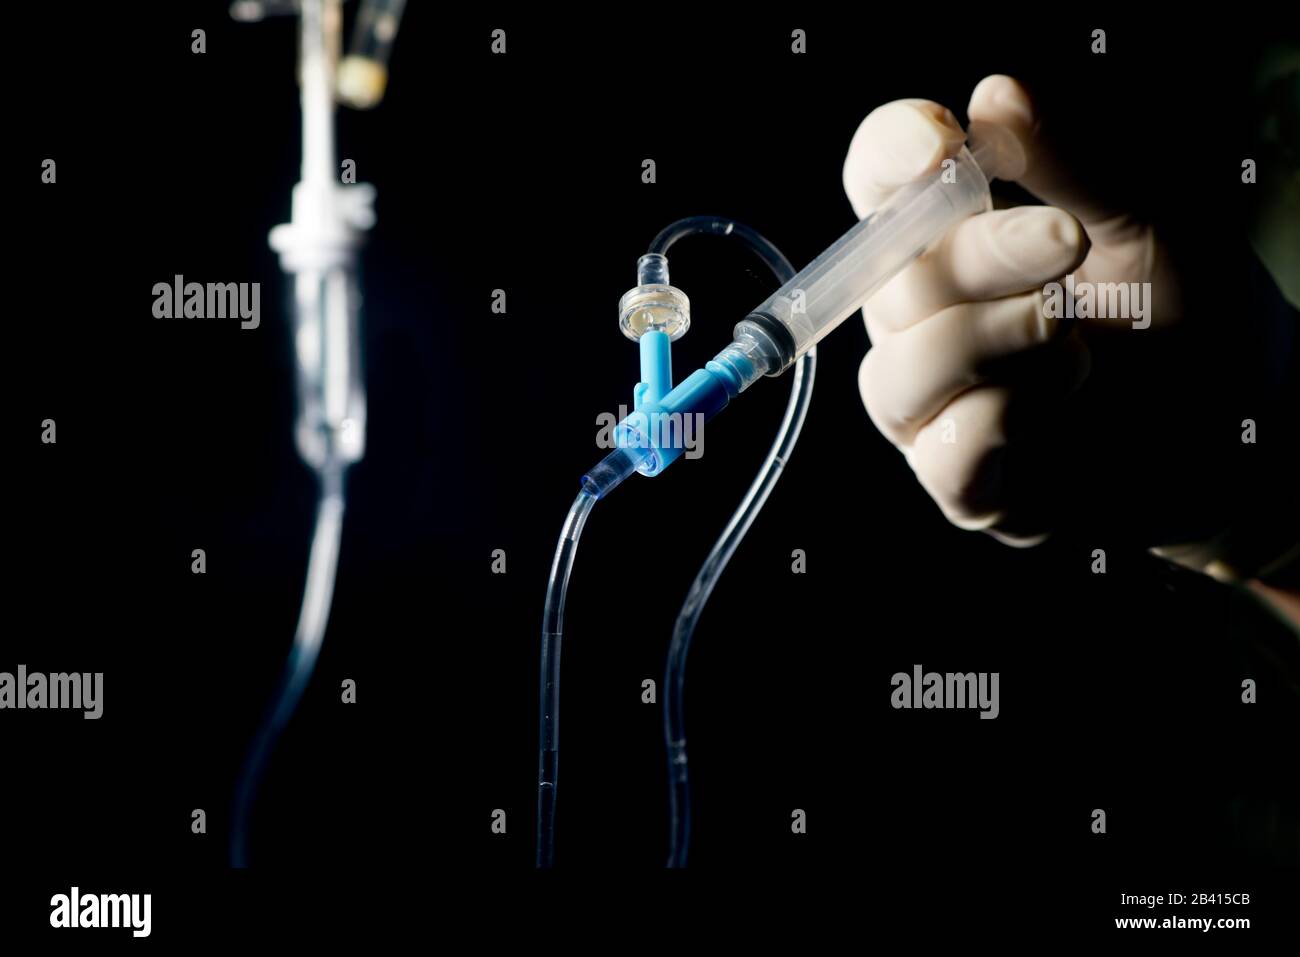 Nurse pushes IV medication by syringe into IV medication port with dark background. Stock Photo